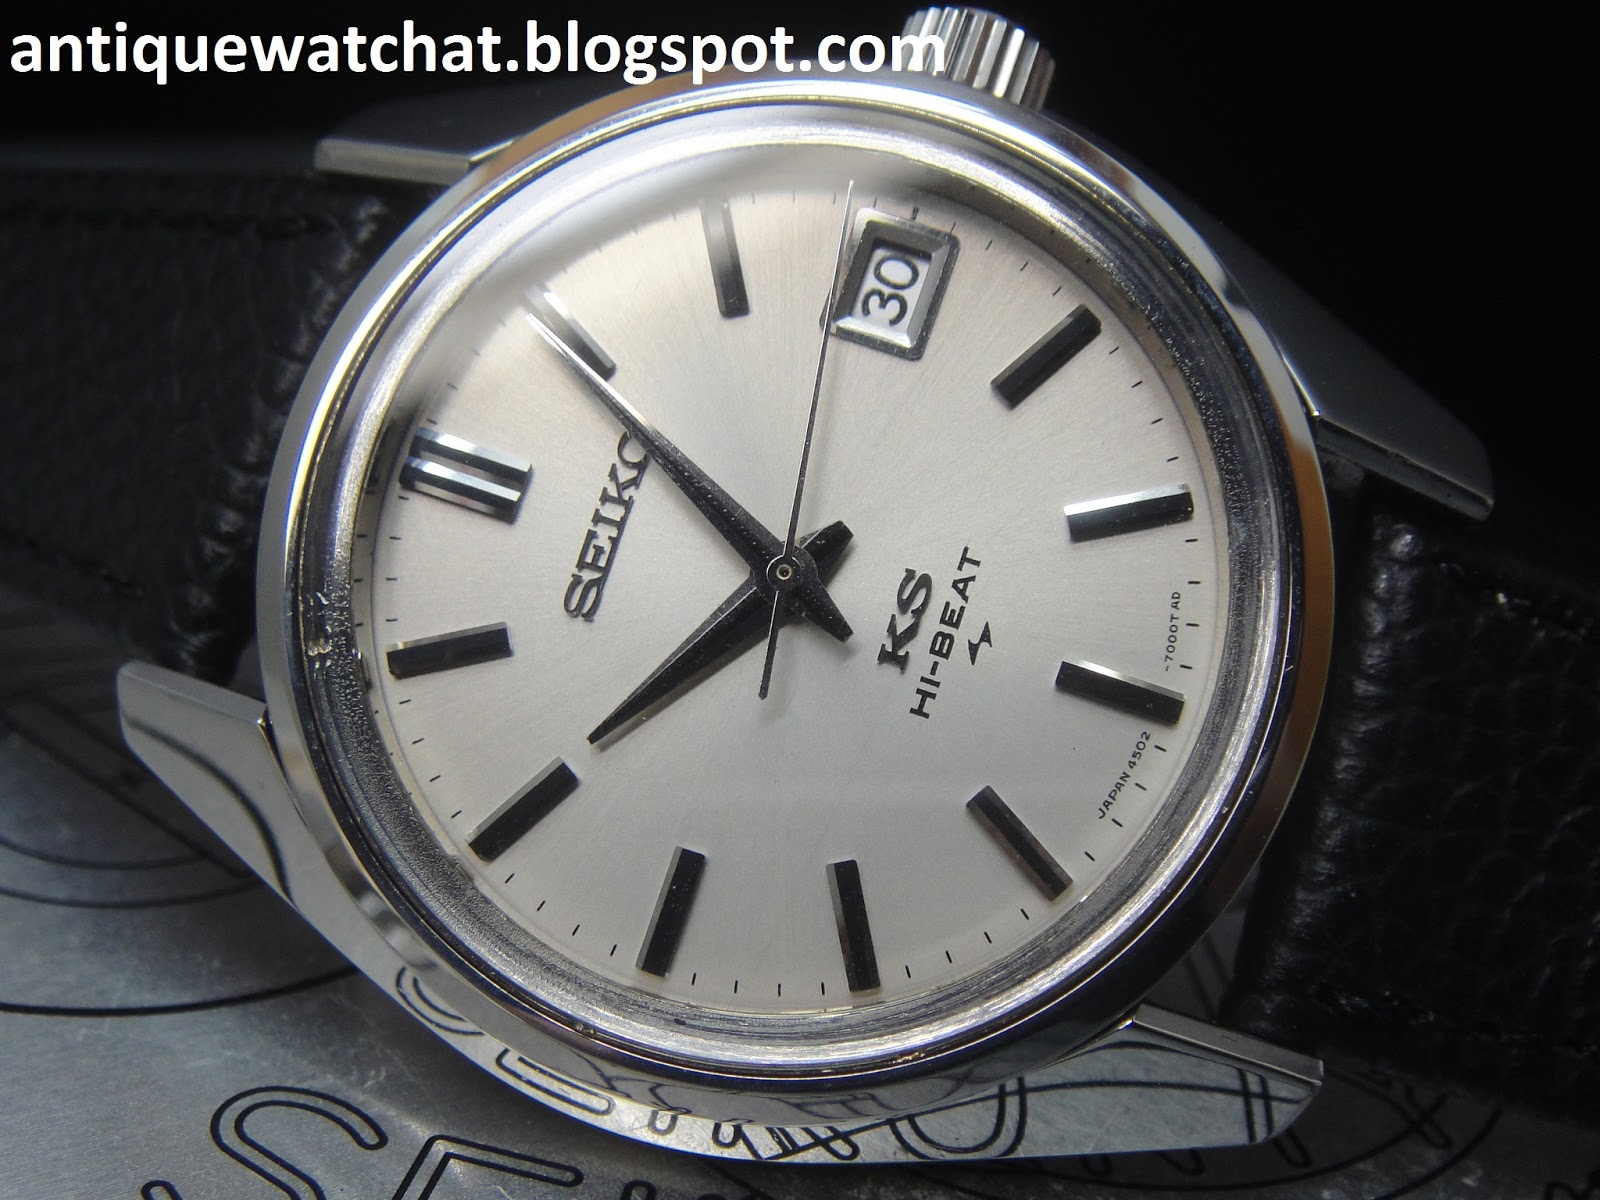 Antique Watch Bar: KING SEIKO 36000 HI-BEAT 4502-7000 KS94 (SOLD)